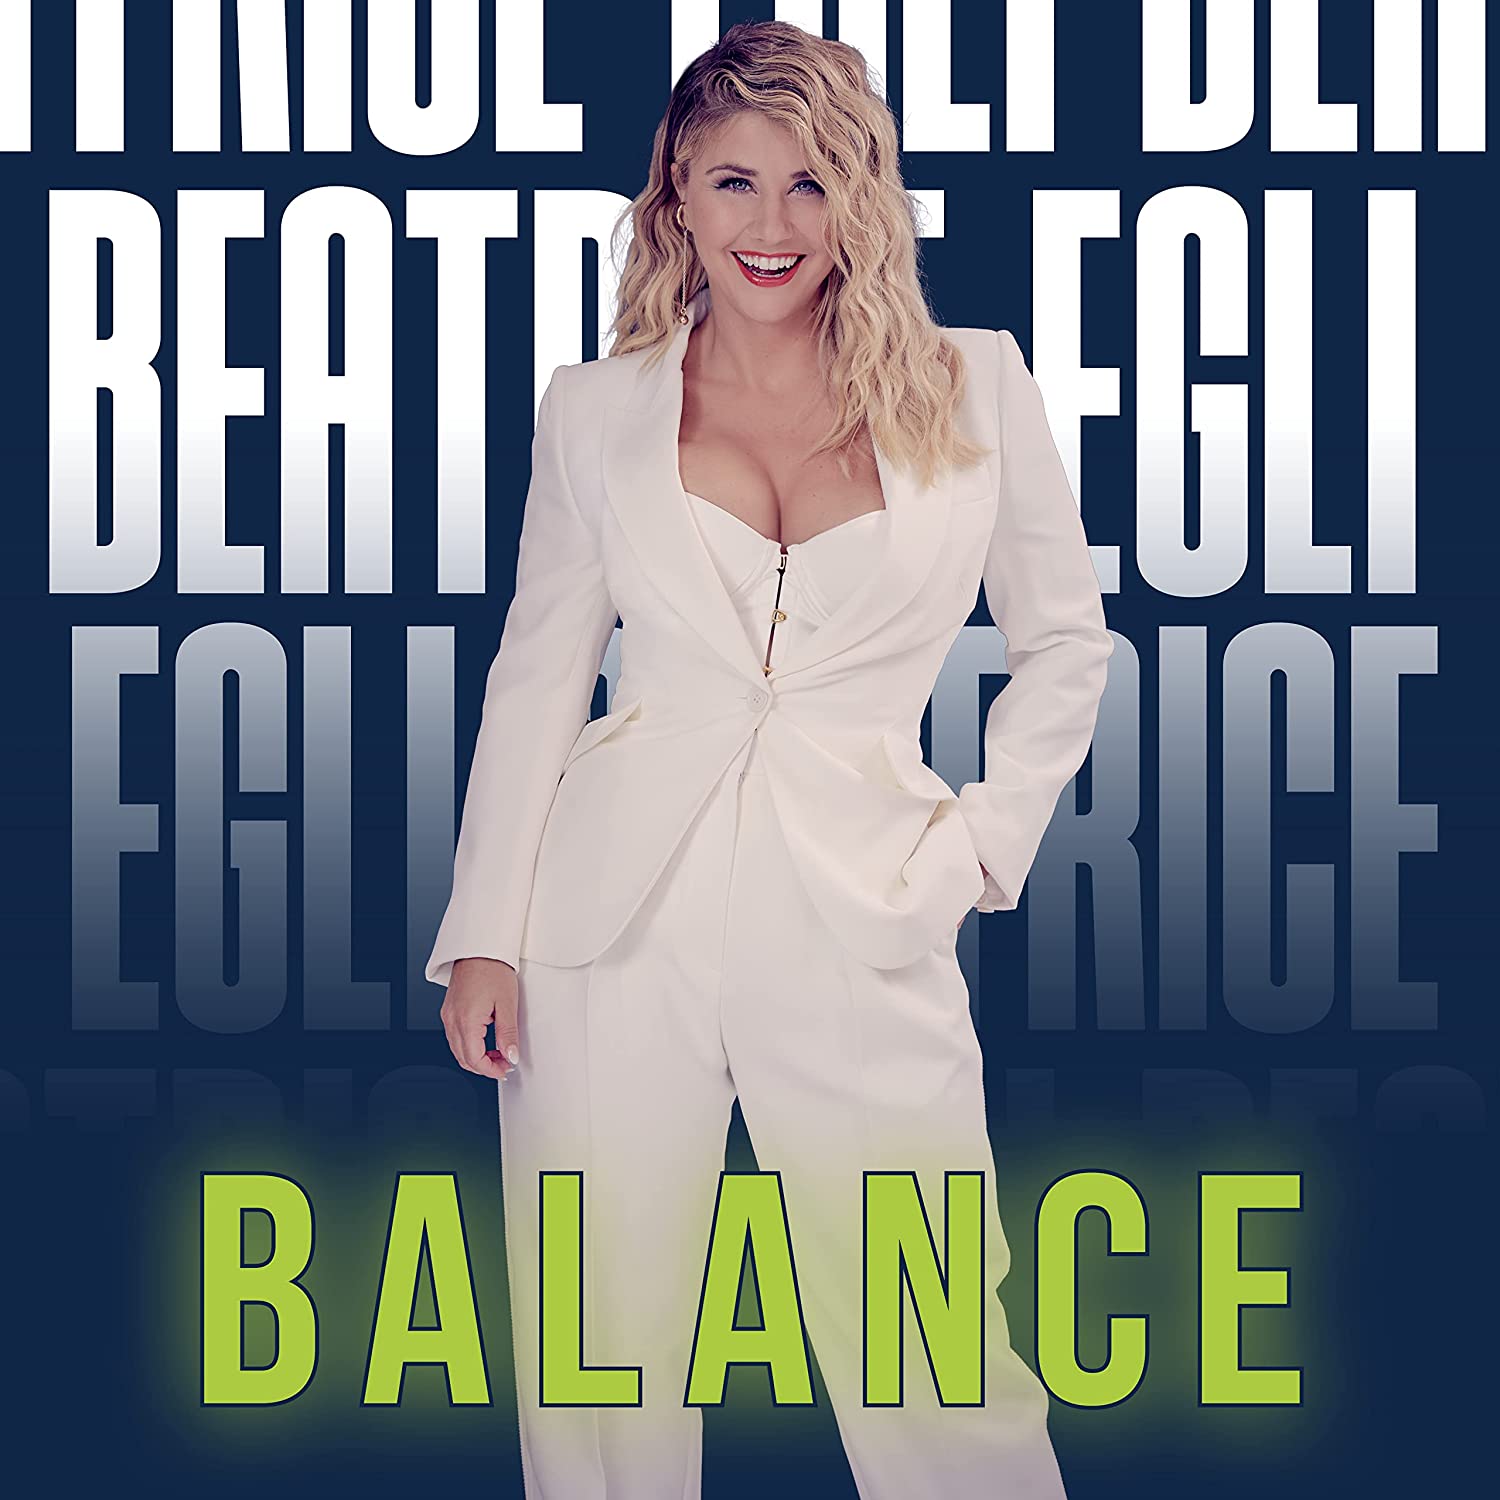 Beatrice Egli - Balance (Deluxe Edition) (2023) 